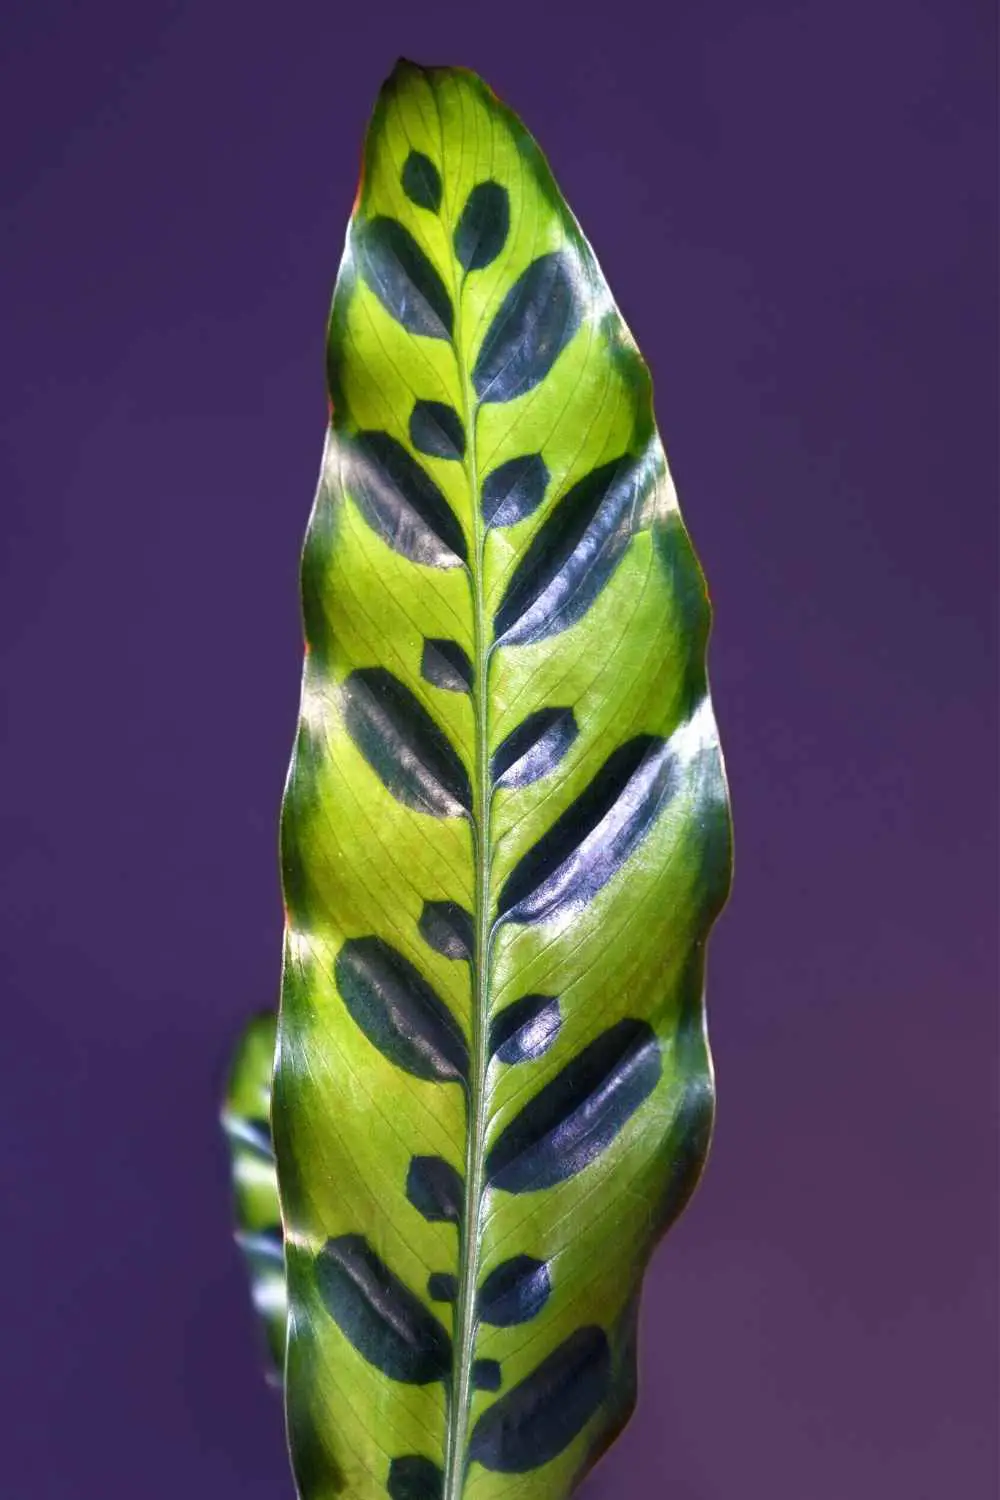 Calathea Rattlesnake leaf detail